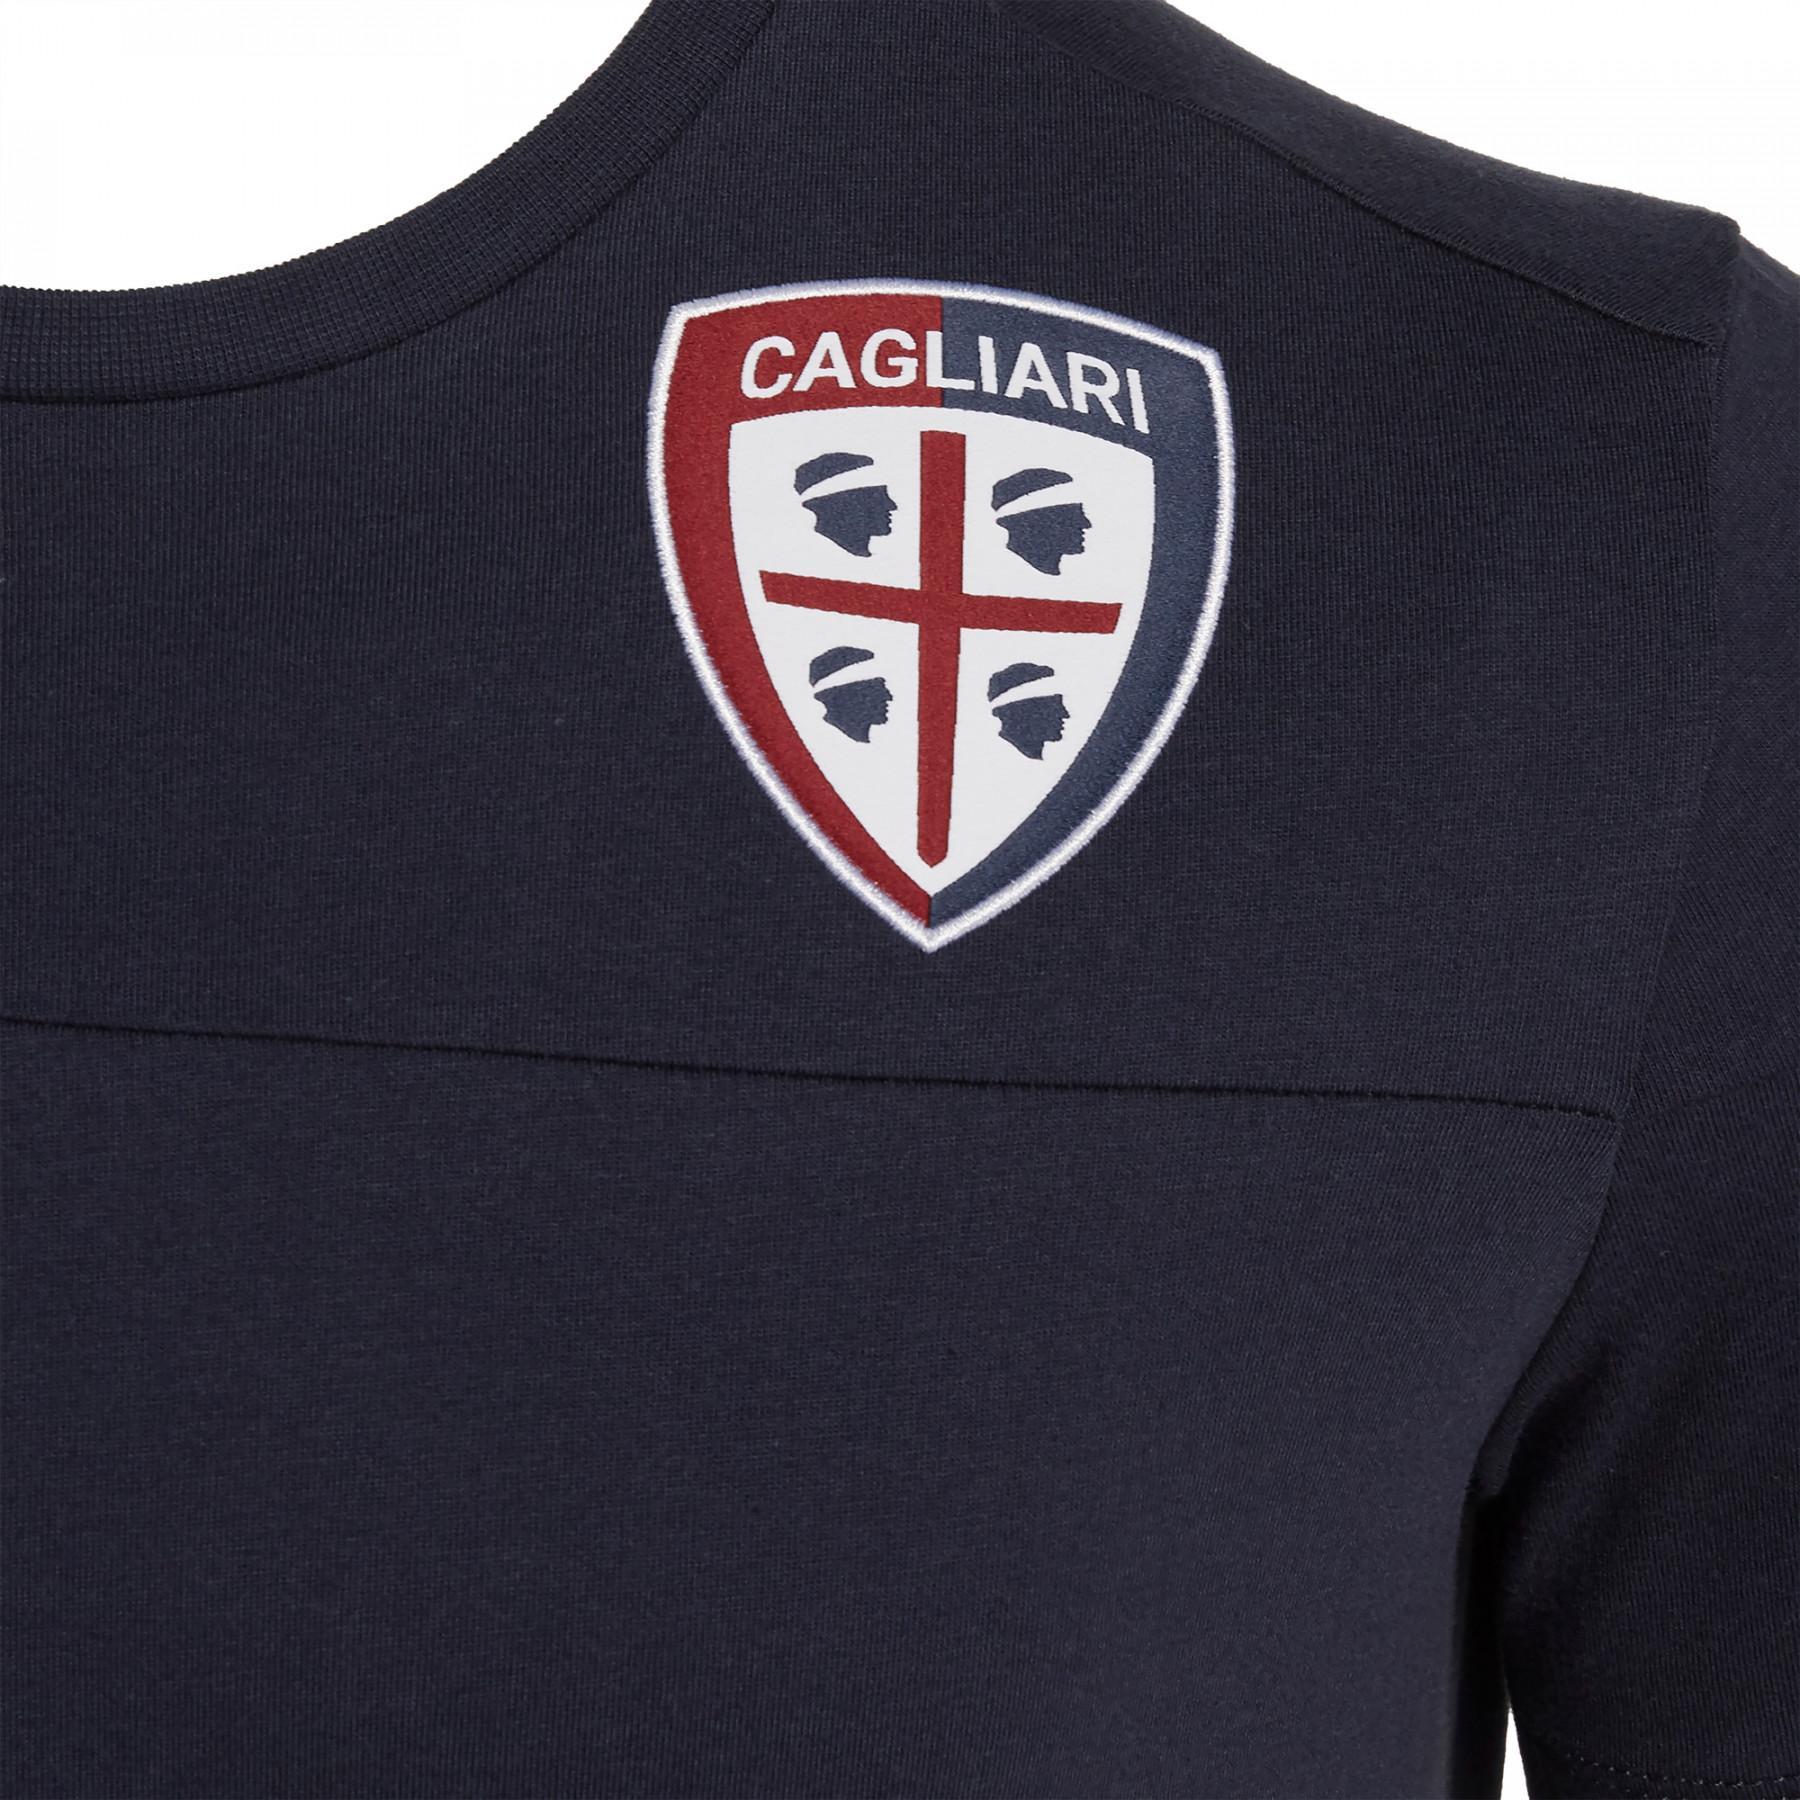 T-shirt Cagliari Calcio 19/20 personale